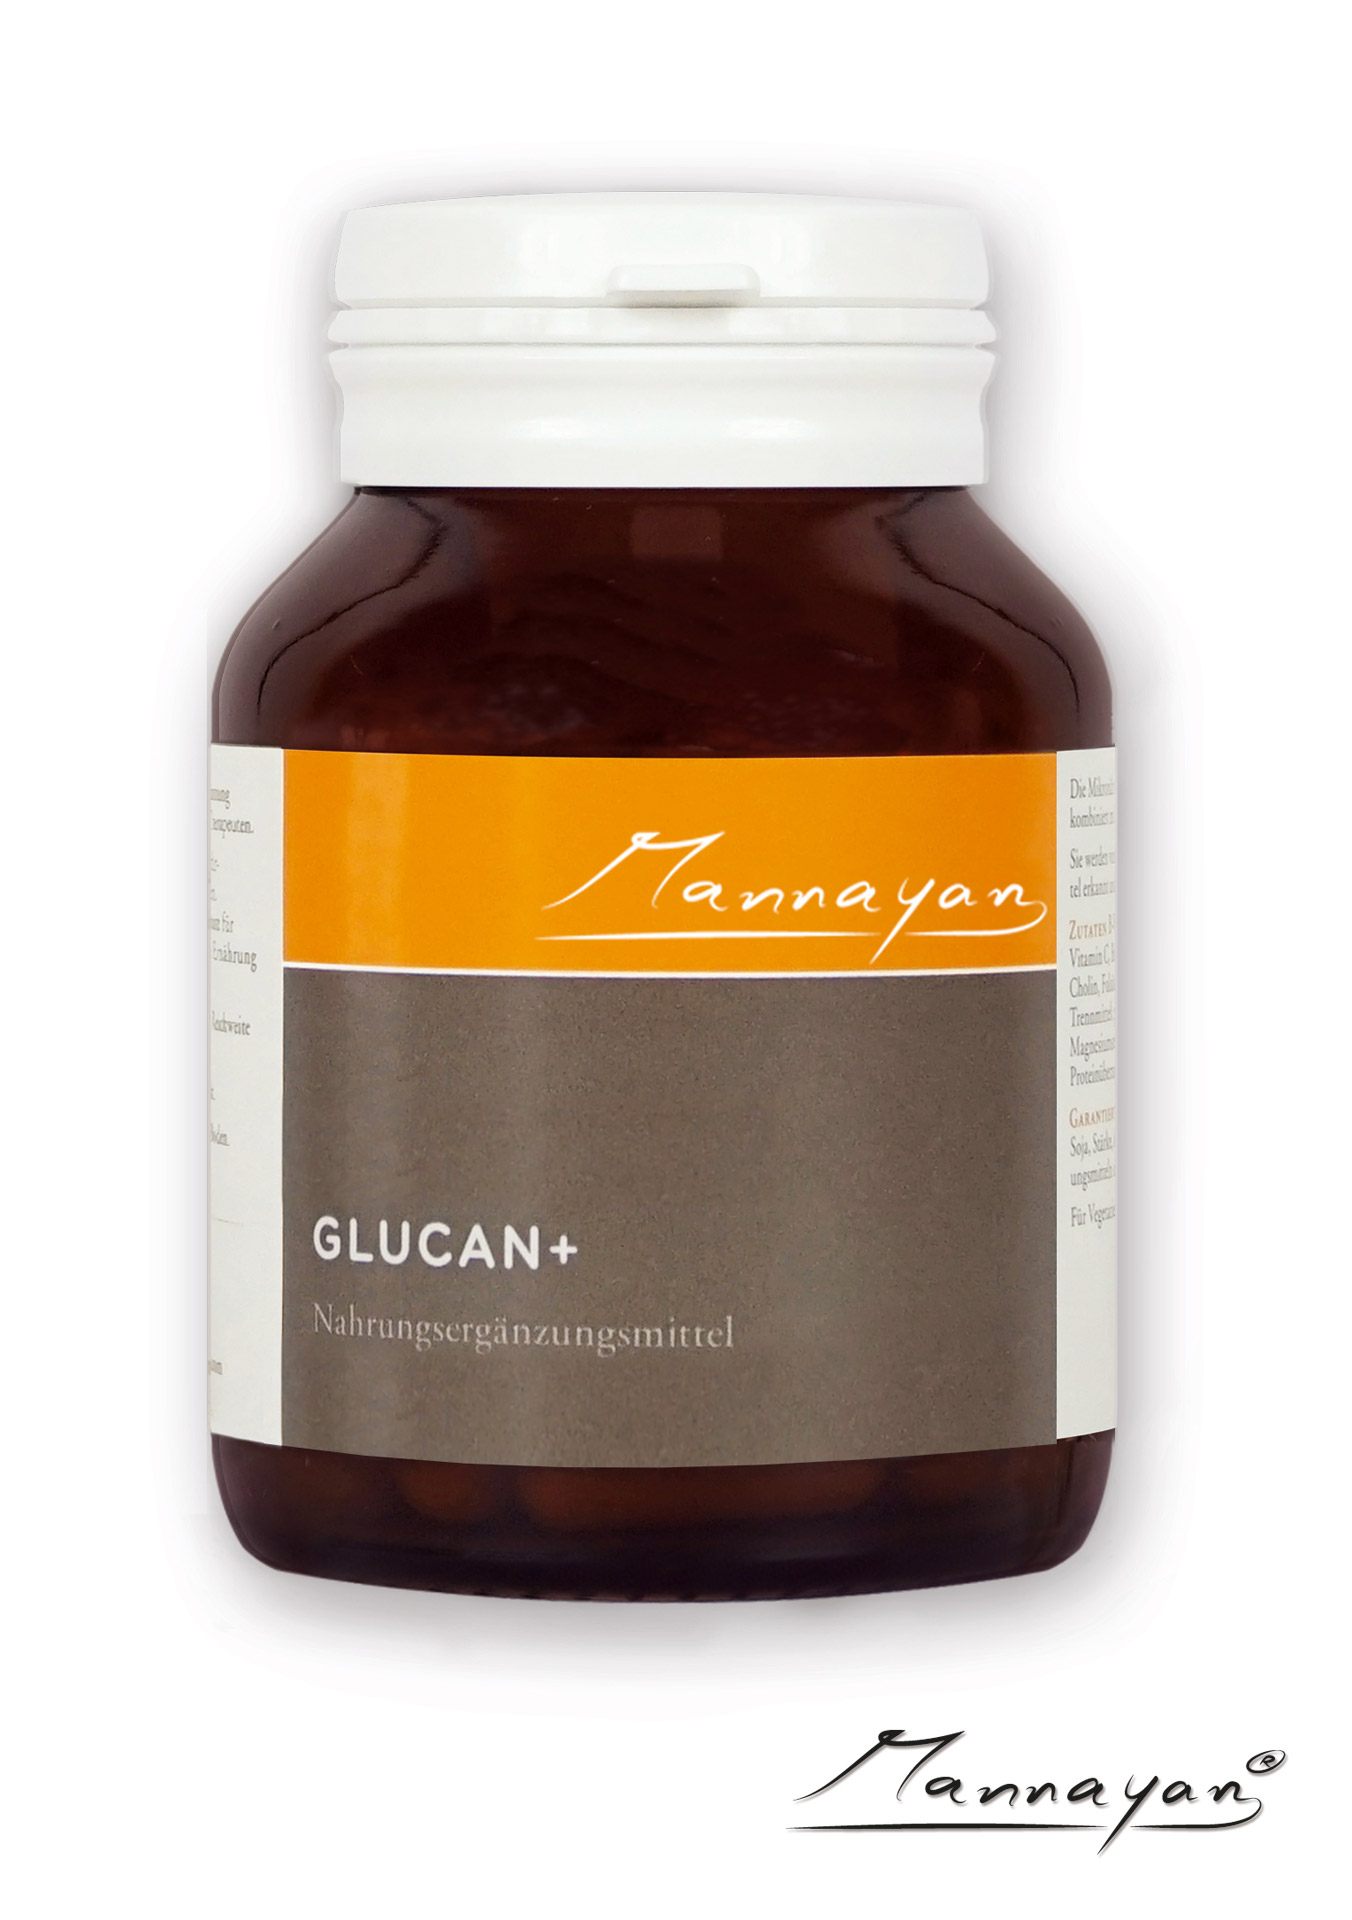 Glucan+ von Mannayan